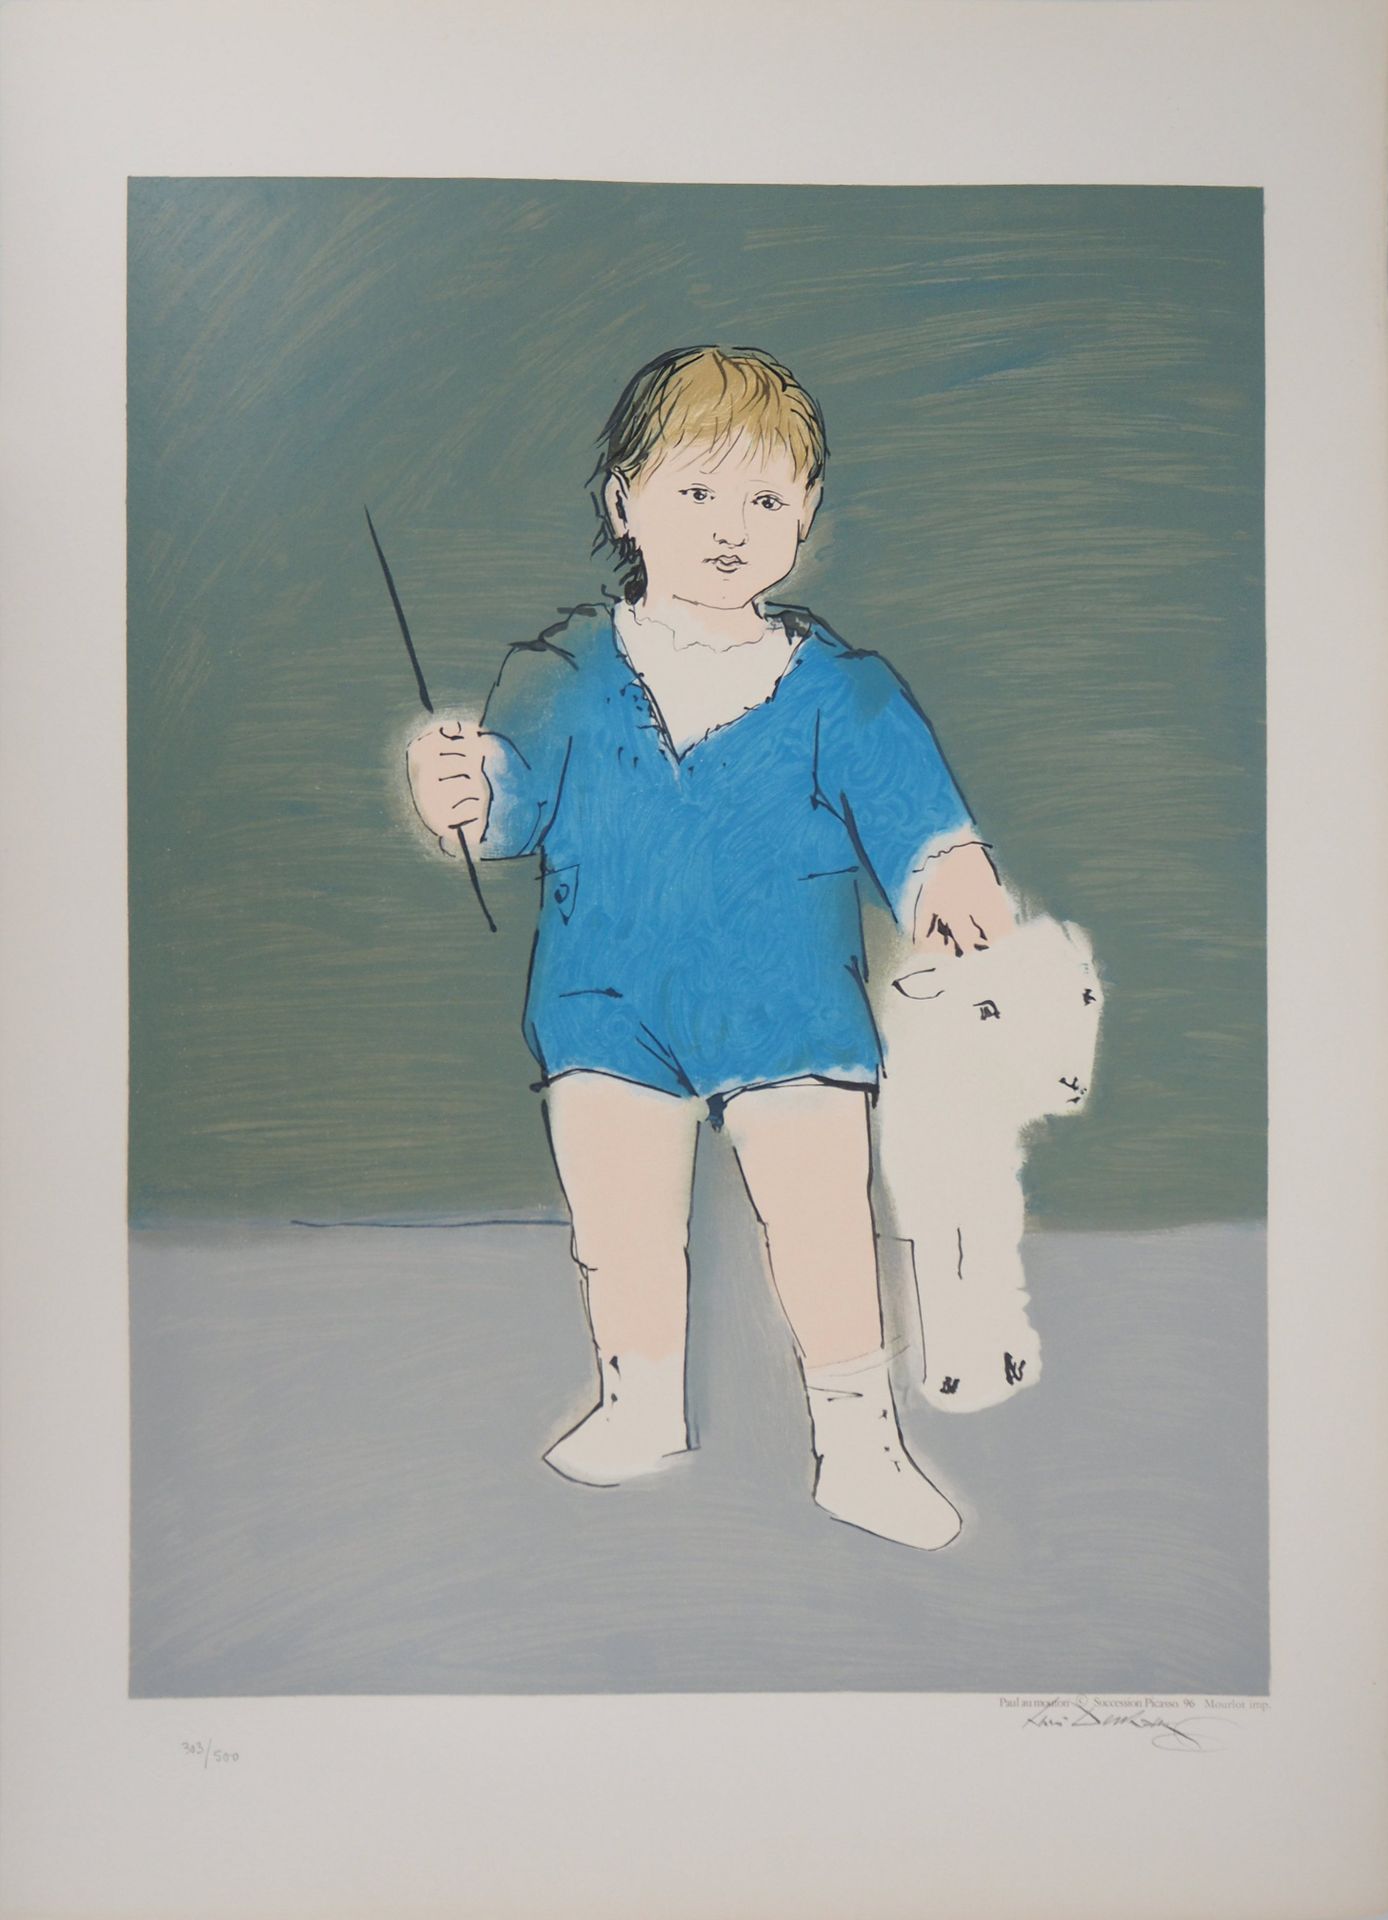 Pablo PICASSO Pablo PICASSO (dopo)

Bambino e agnello: il piccolo Paul Picasso

&hellip;